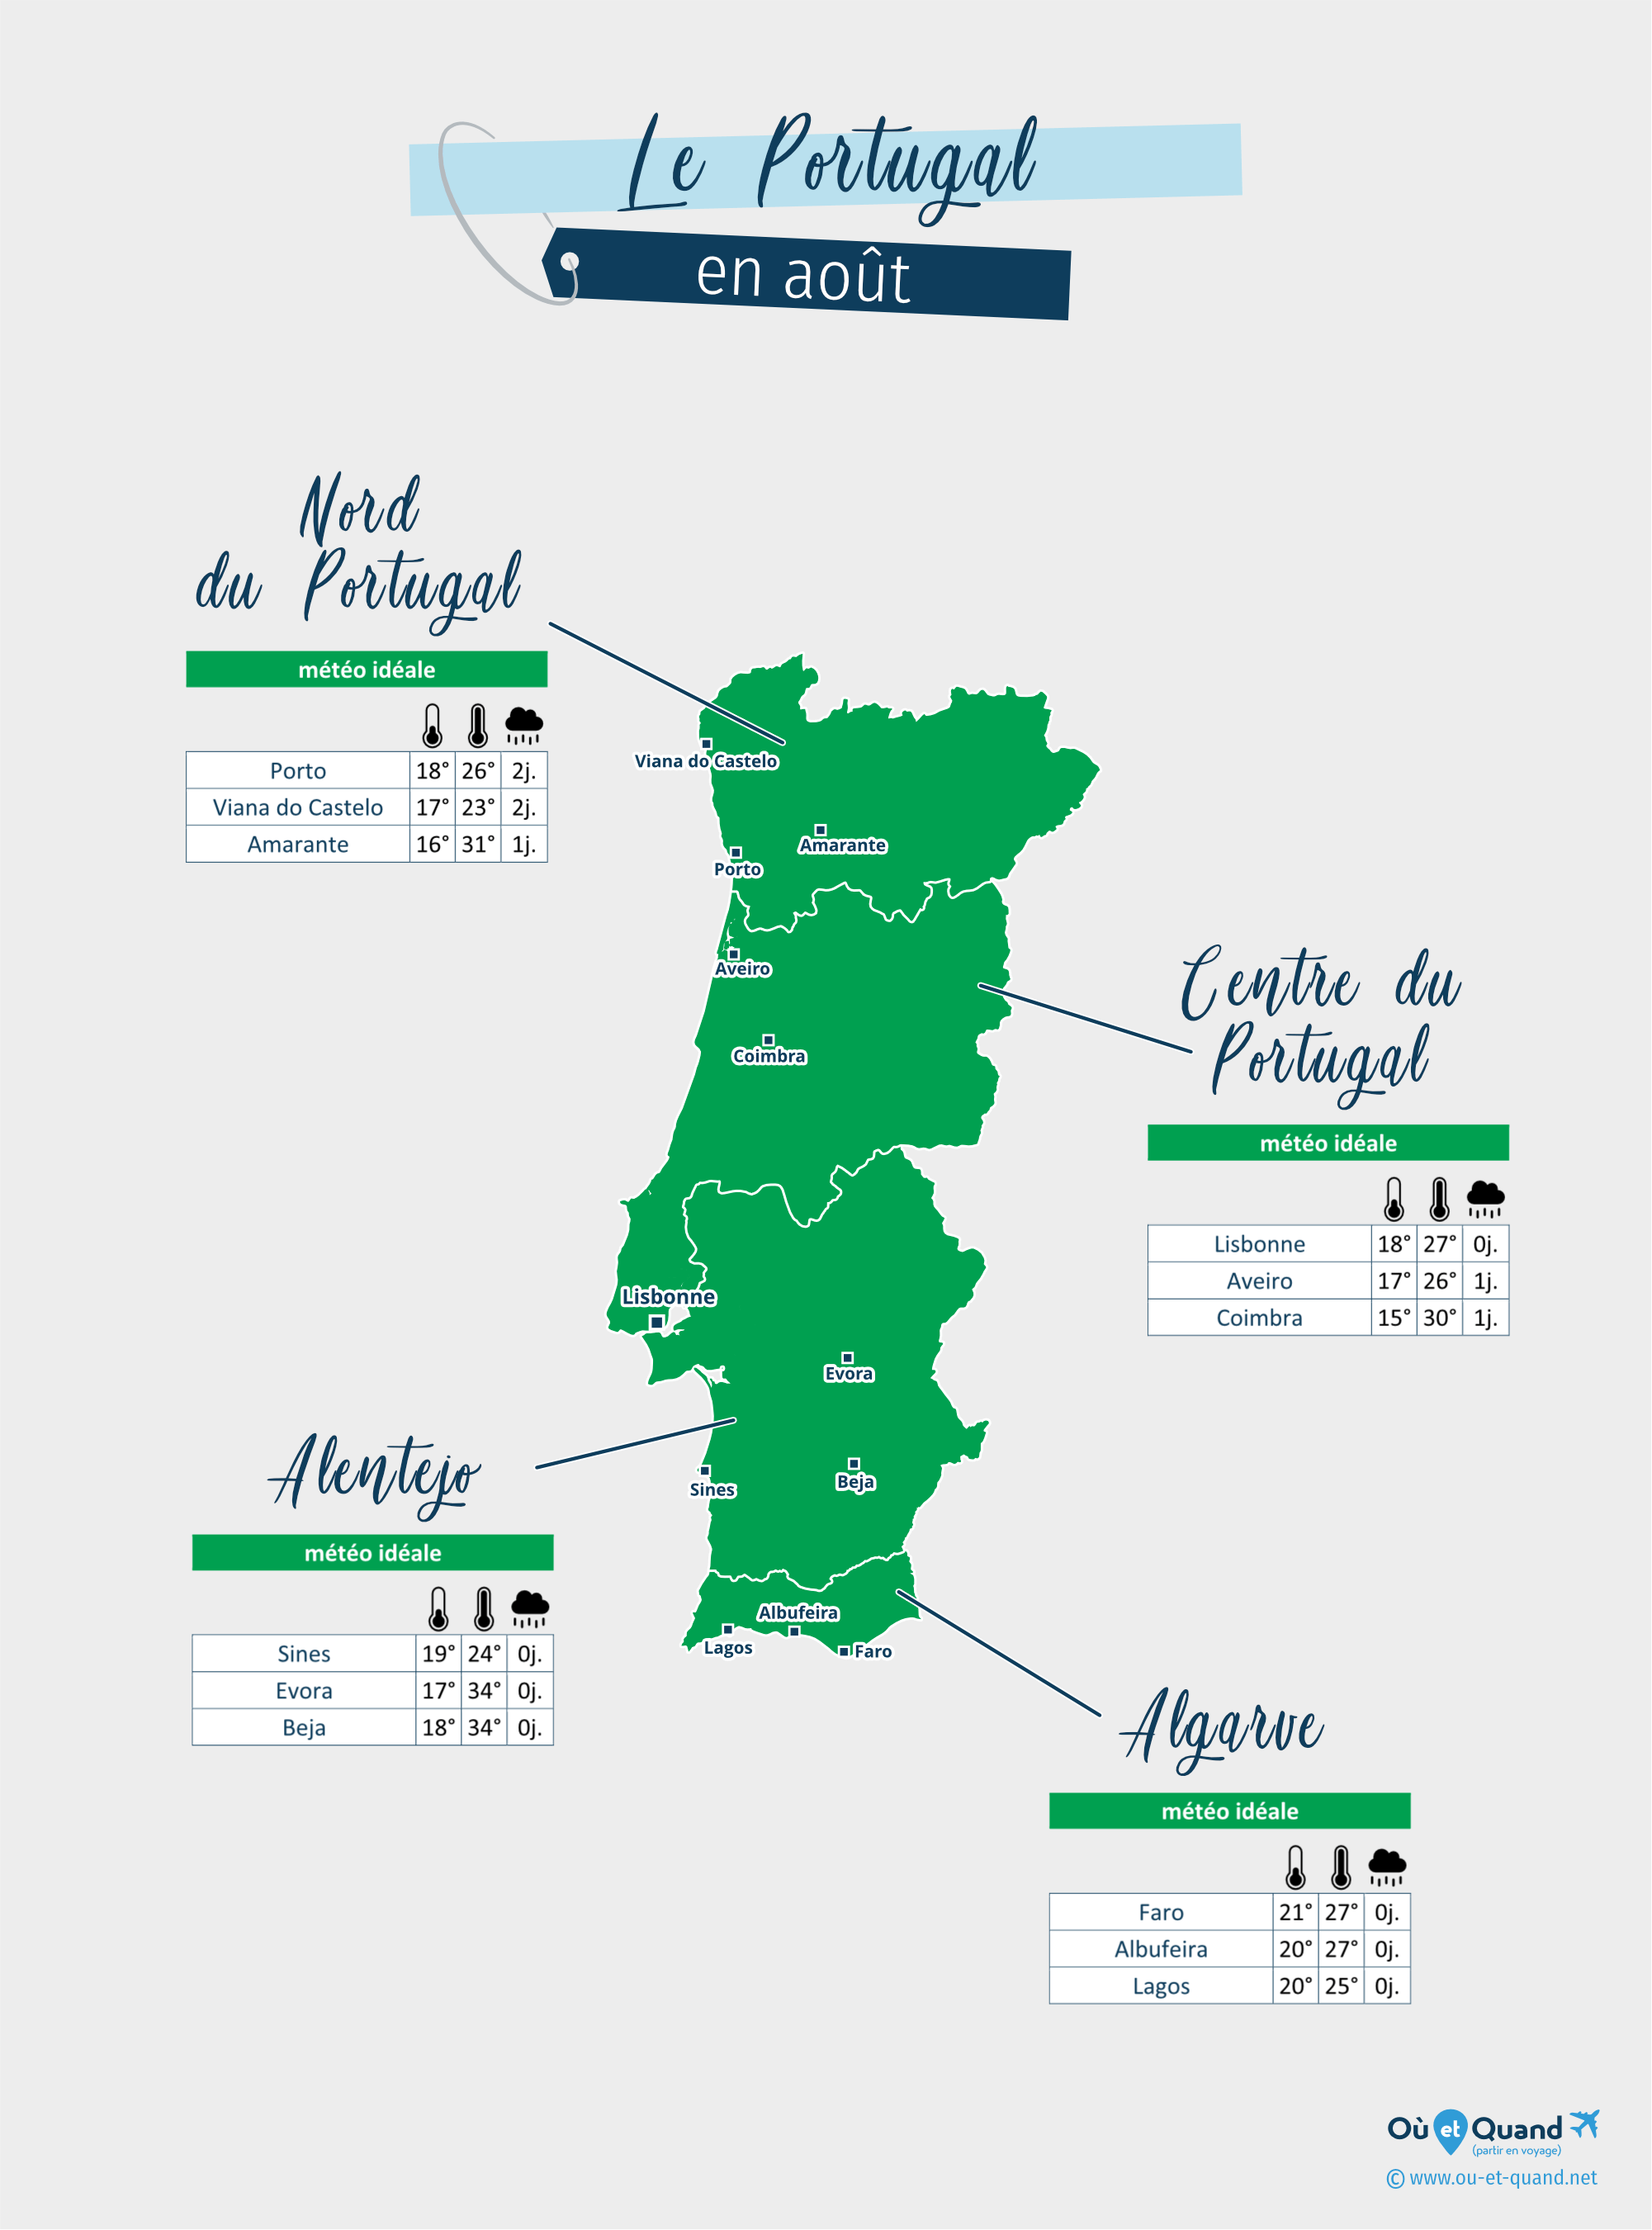 Carte de la météo en août dans les régions du Portugal